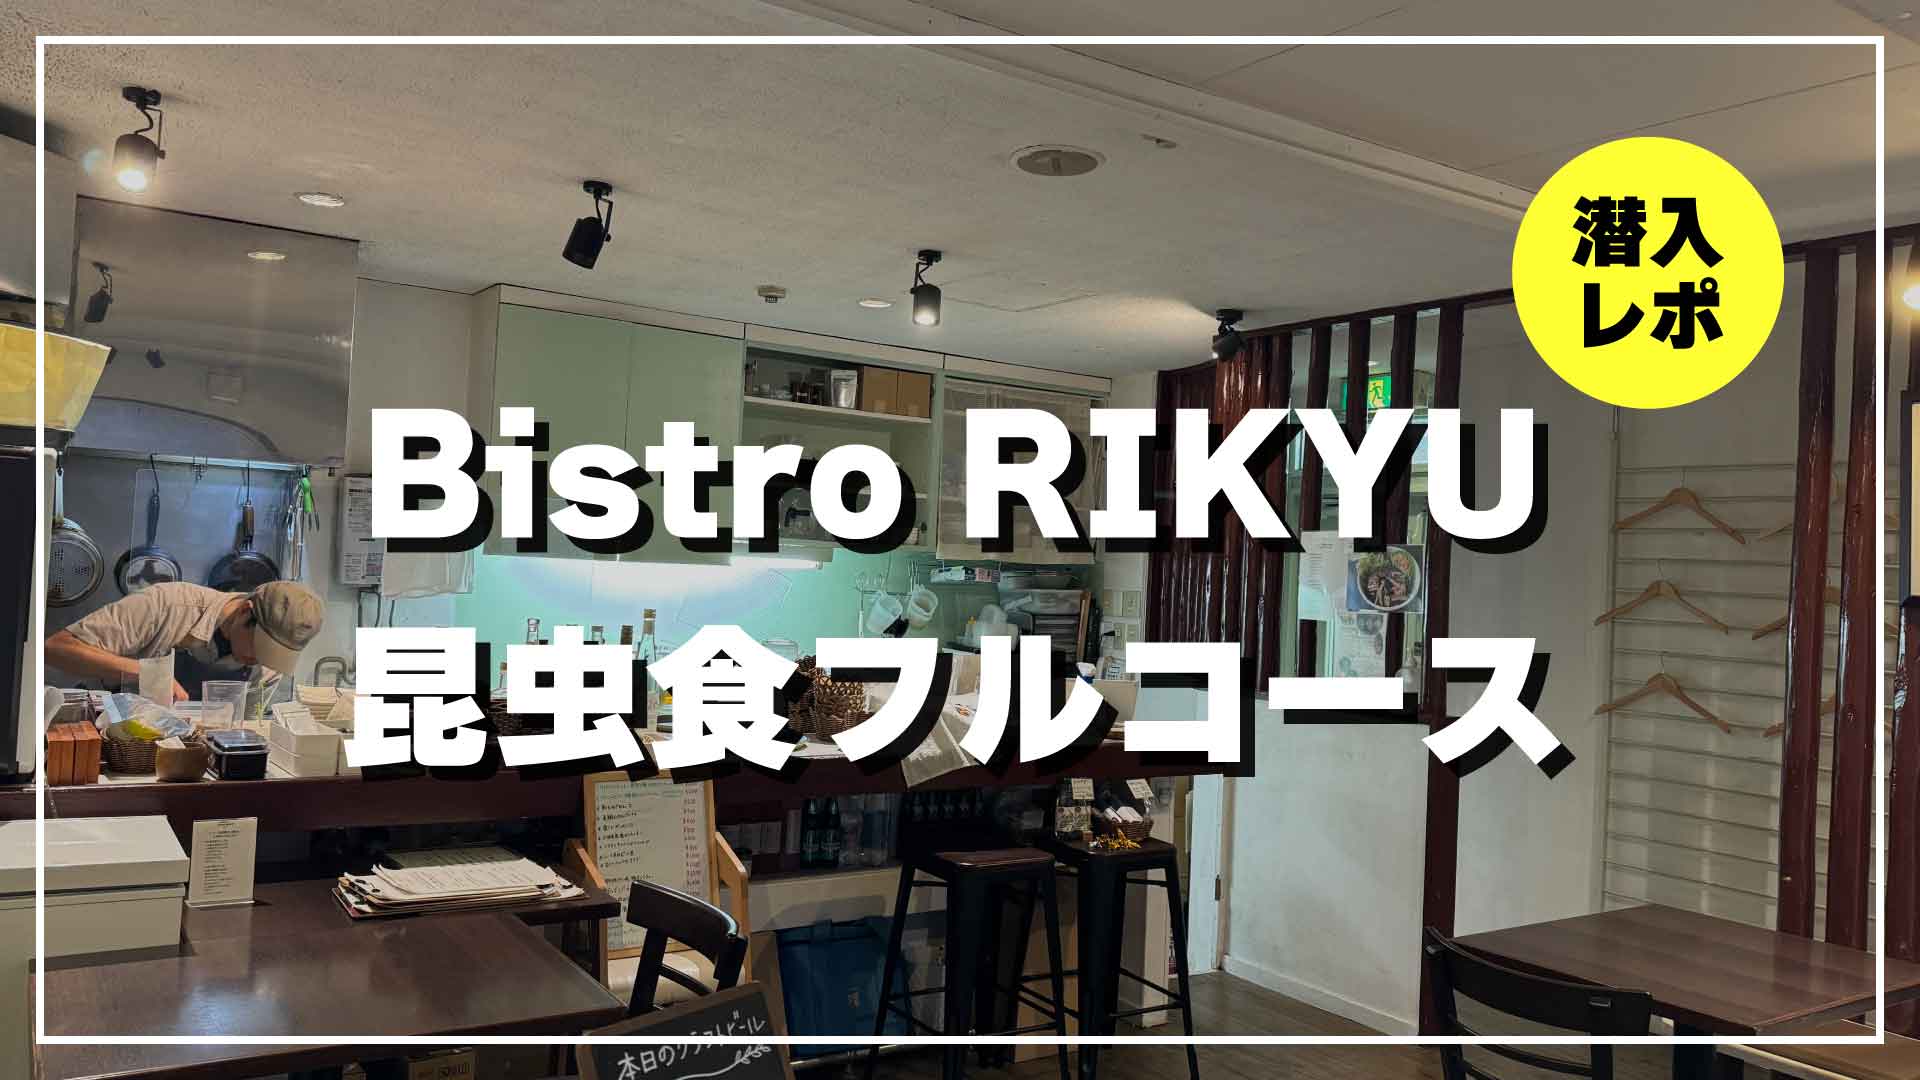 Bistro RIKYU 昆虫食フルコース 潜入レポート